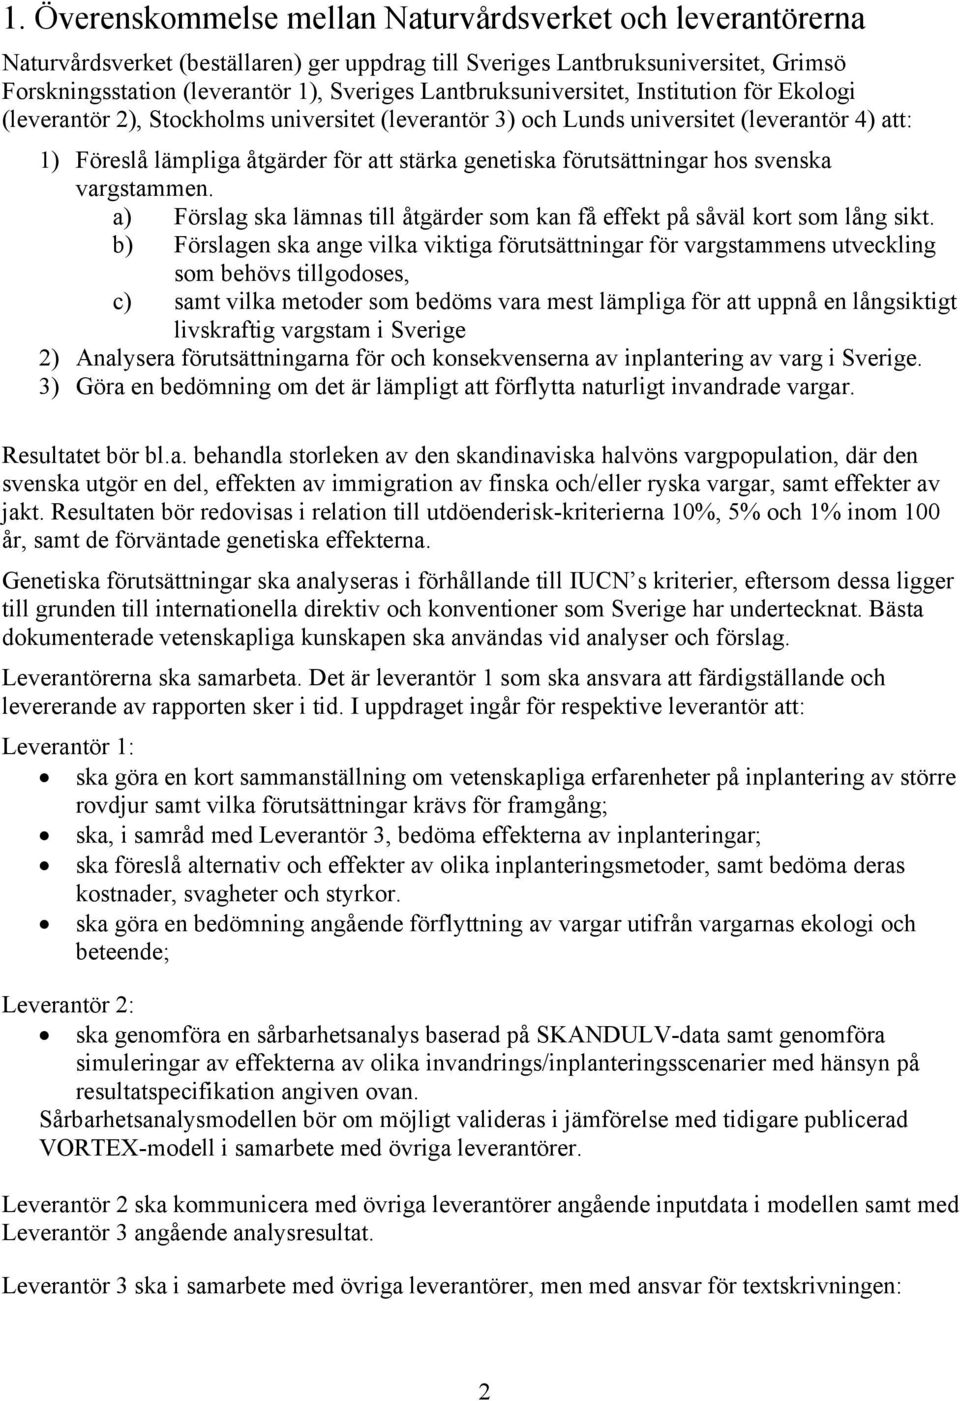 förutsättningar hos svenska vargstammen. a) Förslag ska lämnas till åtgärder som kan få effekt på såväl kort som lång sikt.